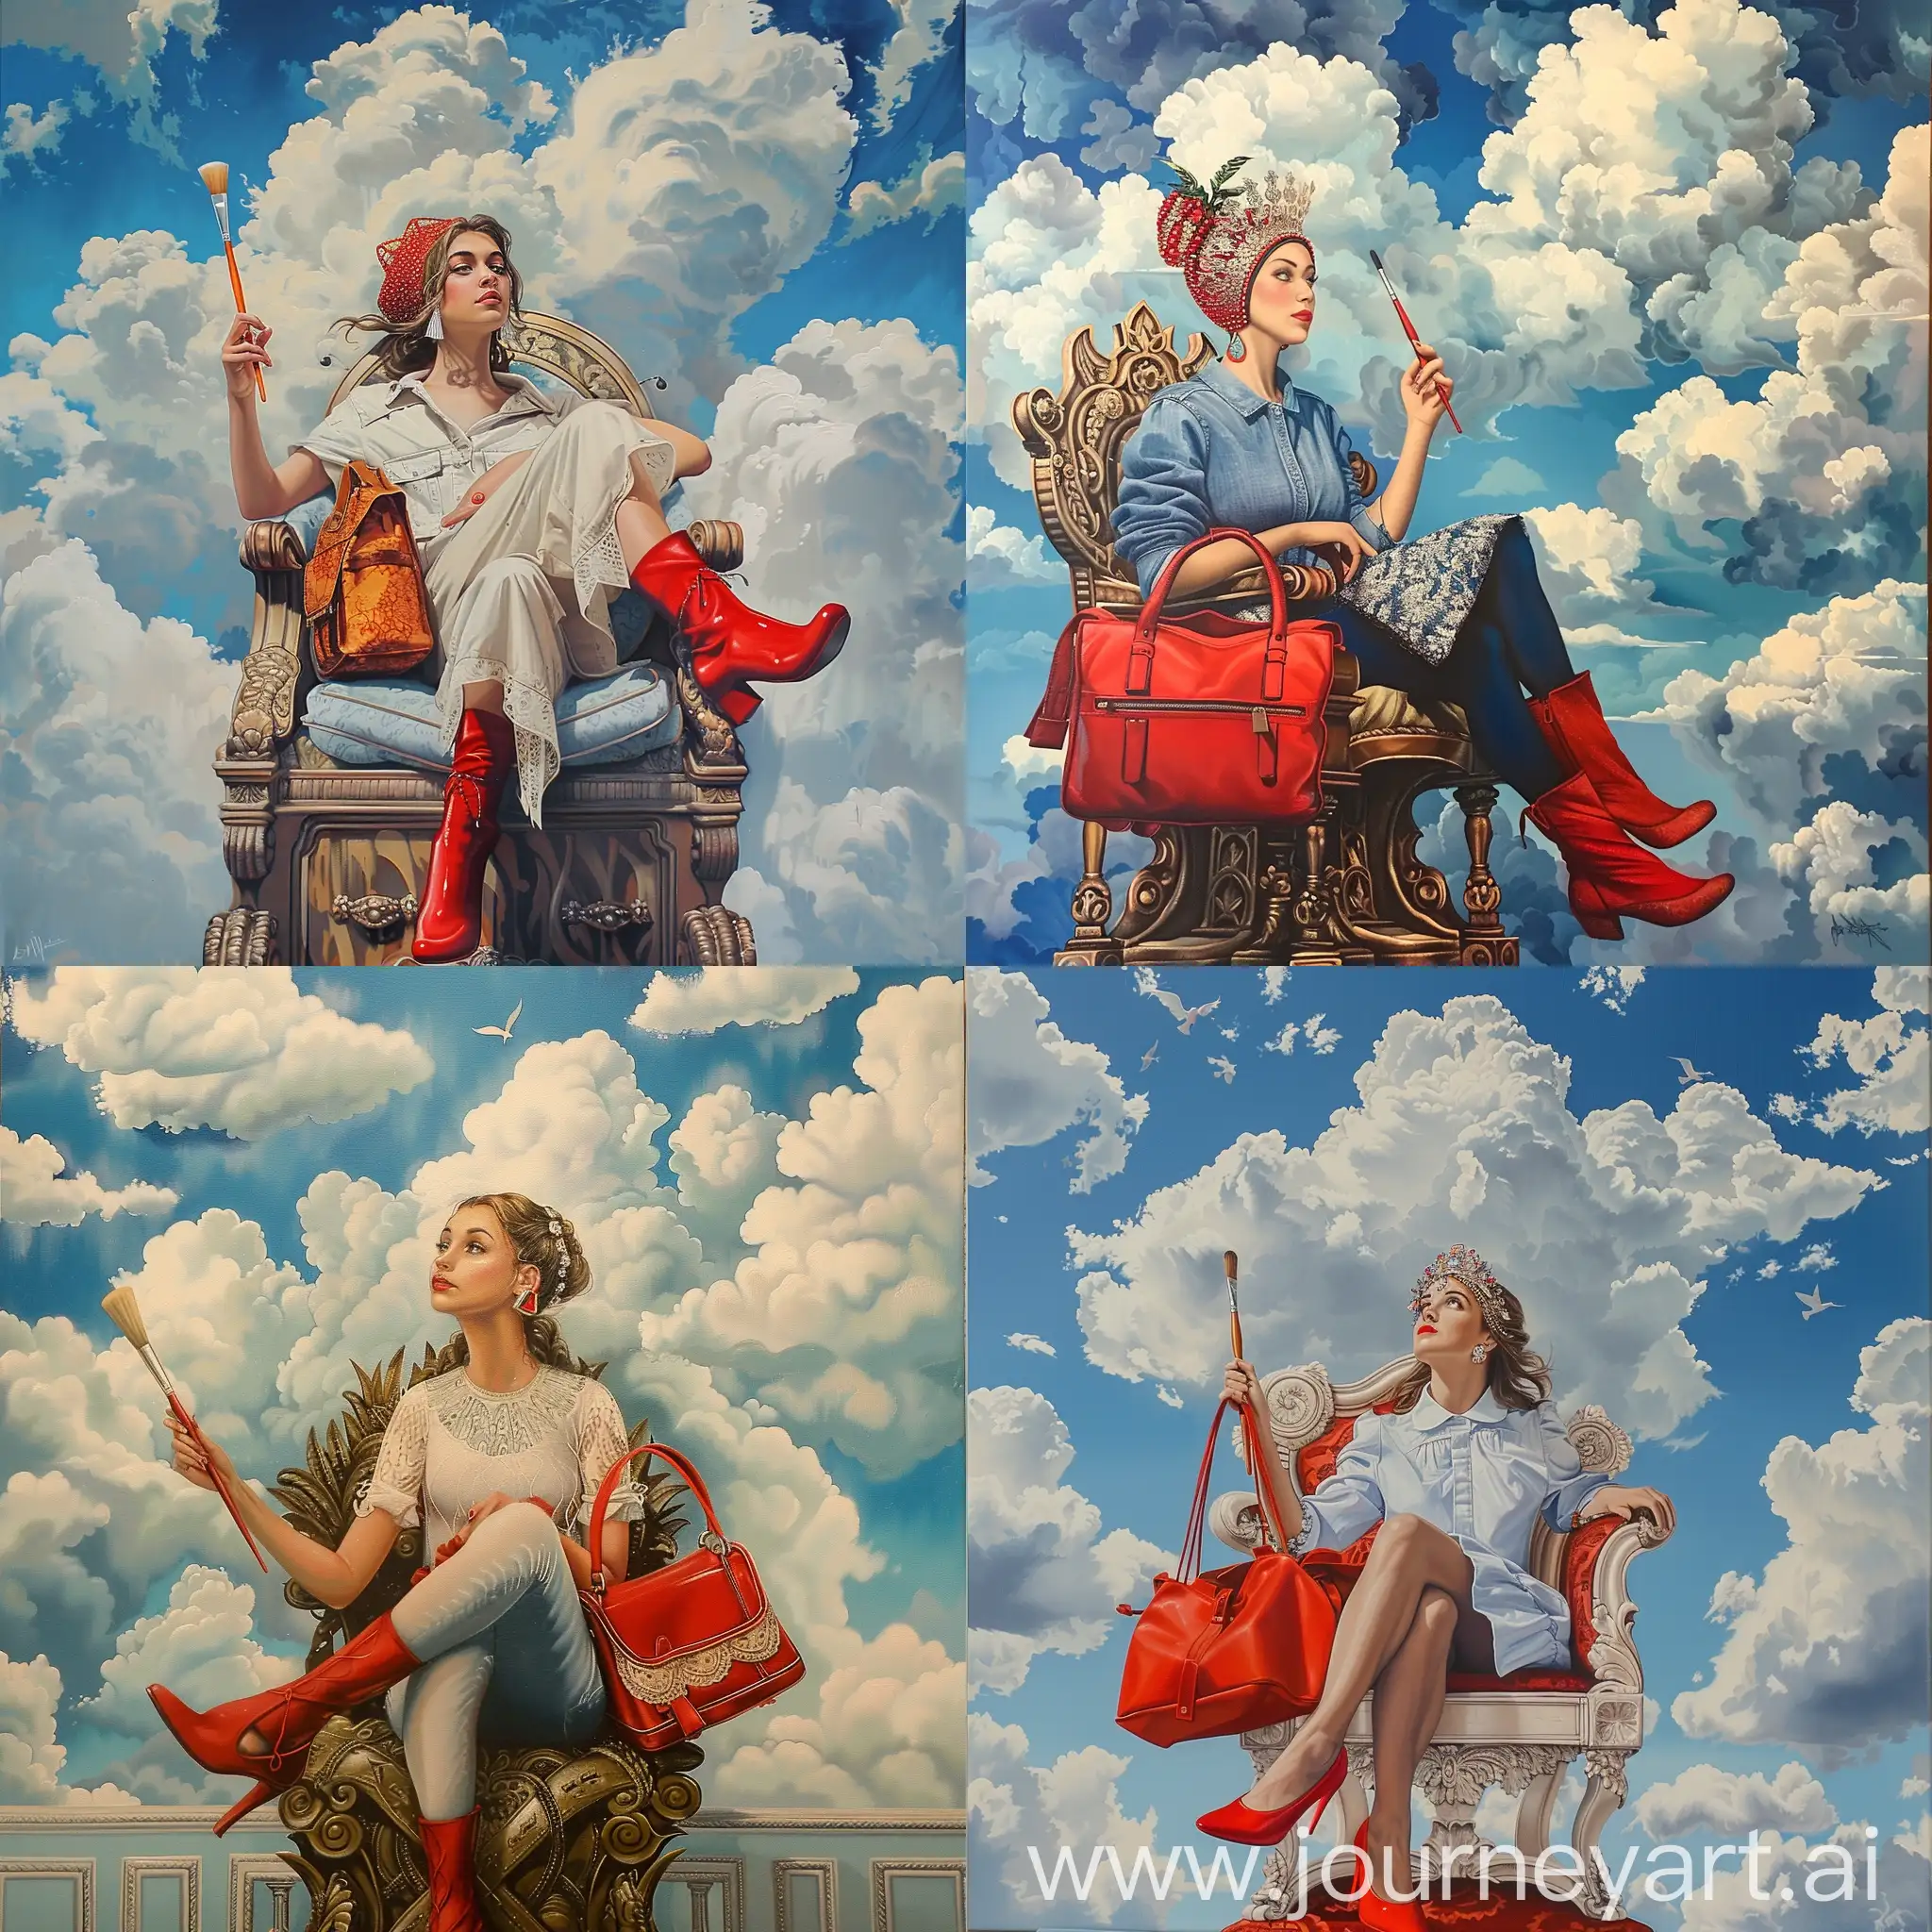 стильная живопись небо облака девушка сидит с сумкой в кокошнике на троне в красных туфлях кисть в руке

